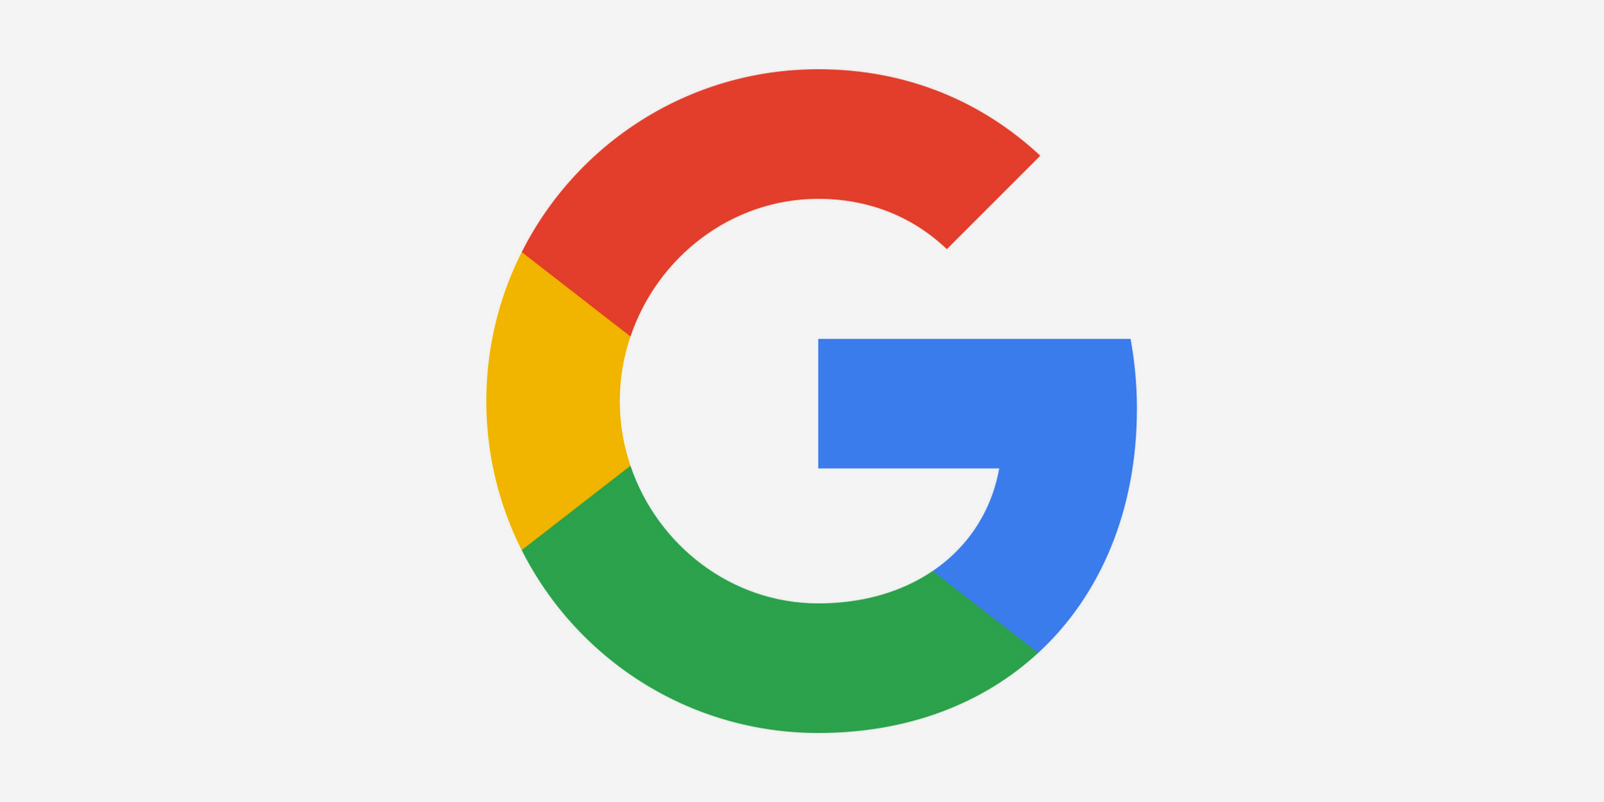 Cách tìm kiếm thông tin cá nhân bằng Google